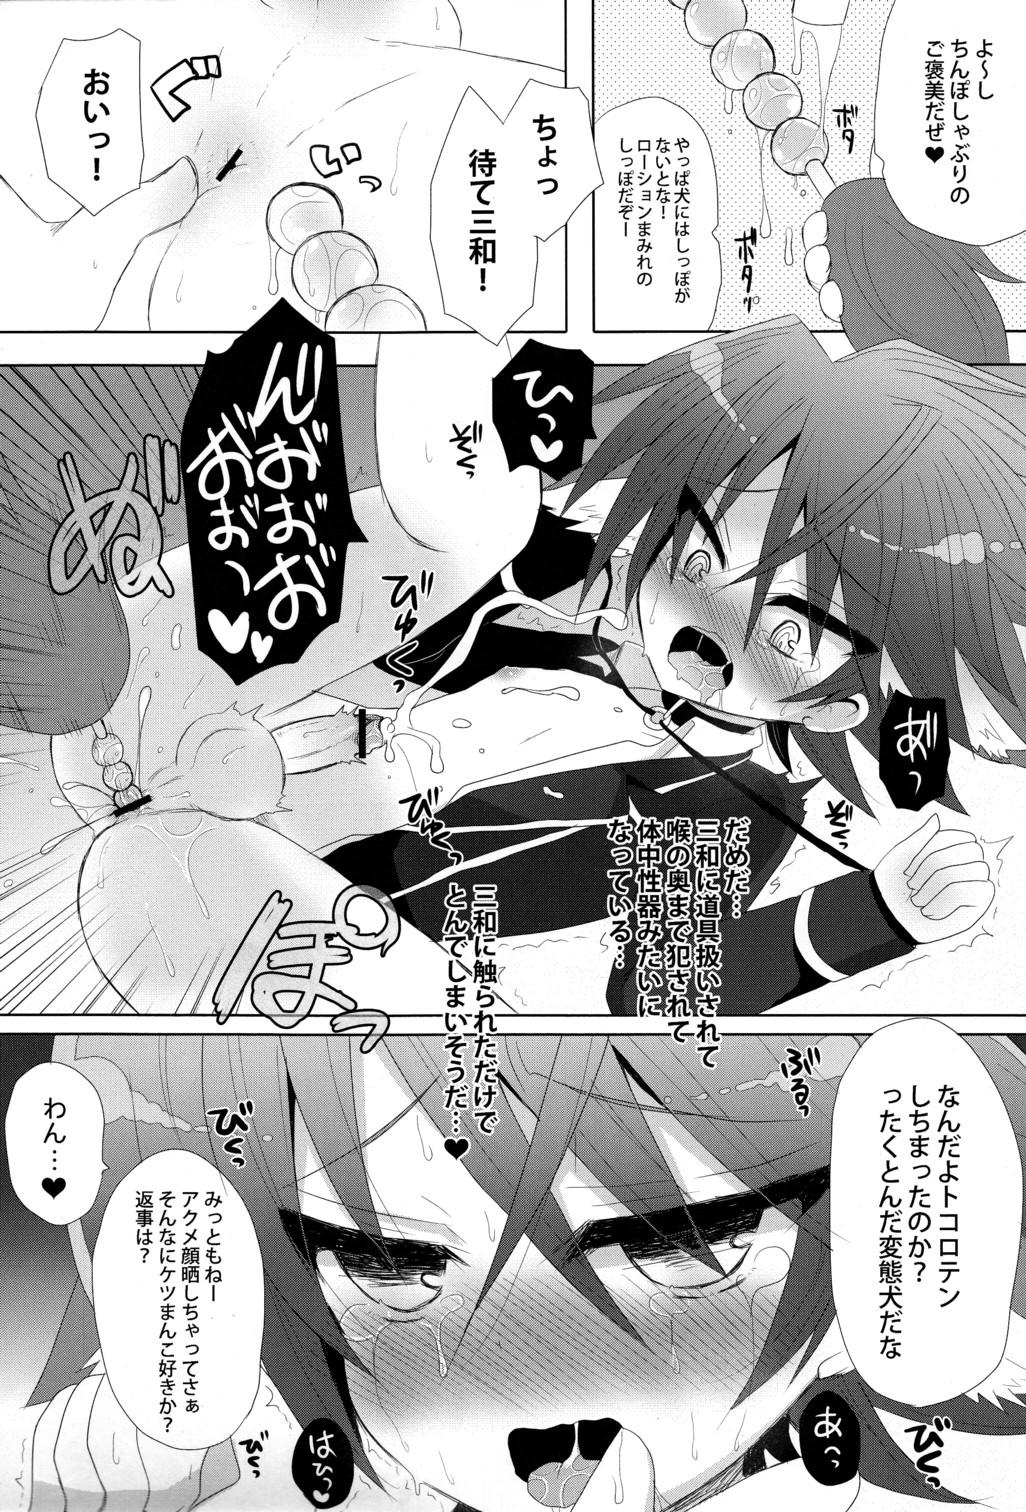 Orgia Kai Inu. - Cardfight vanguard Teen Blowjob - Page 10